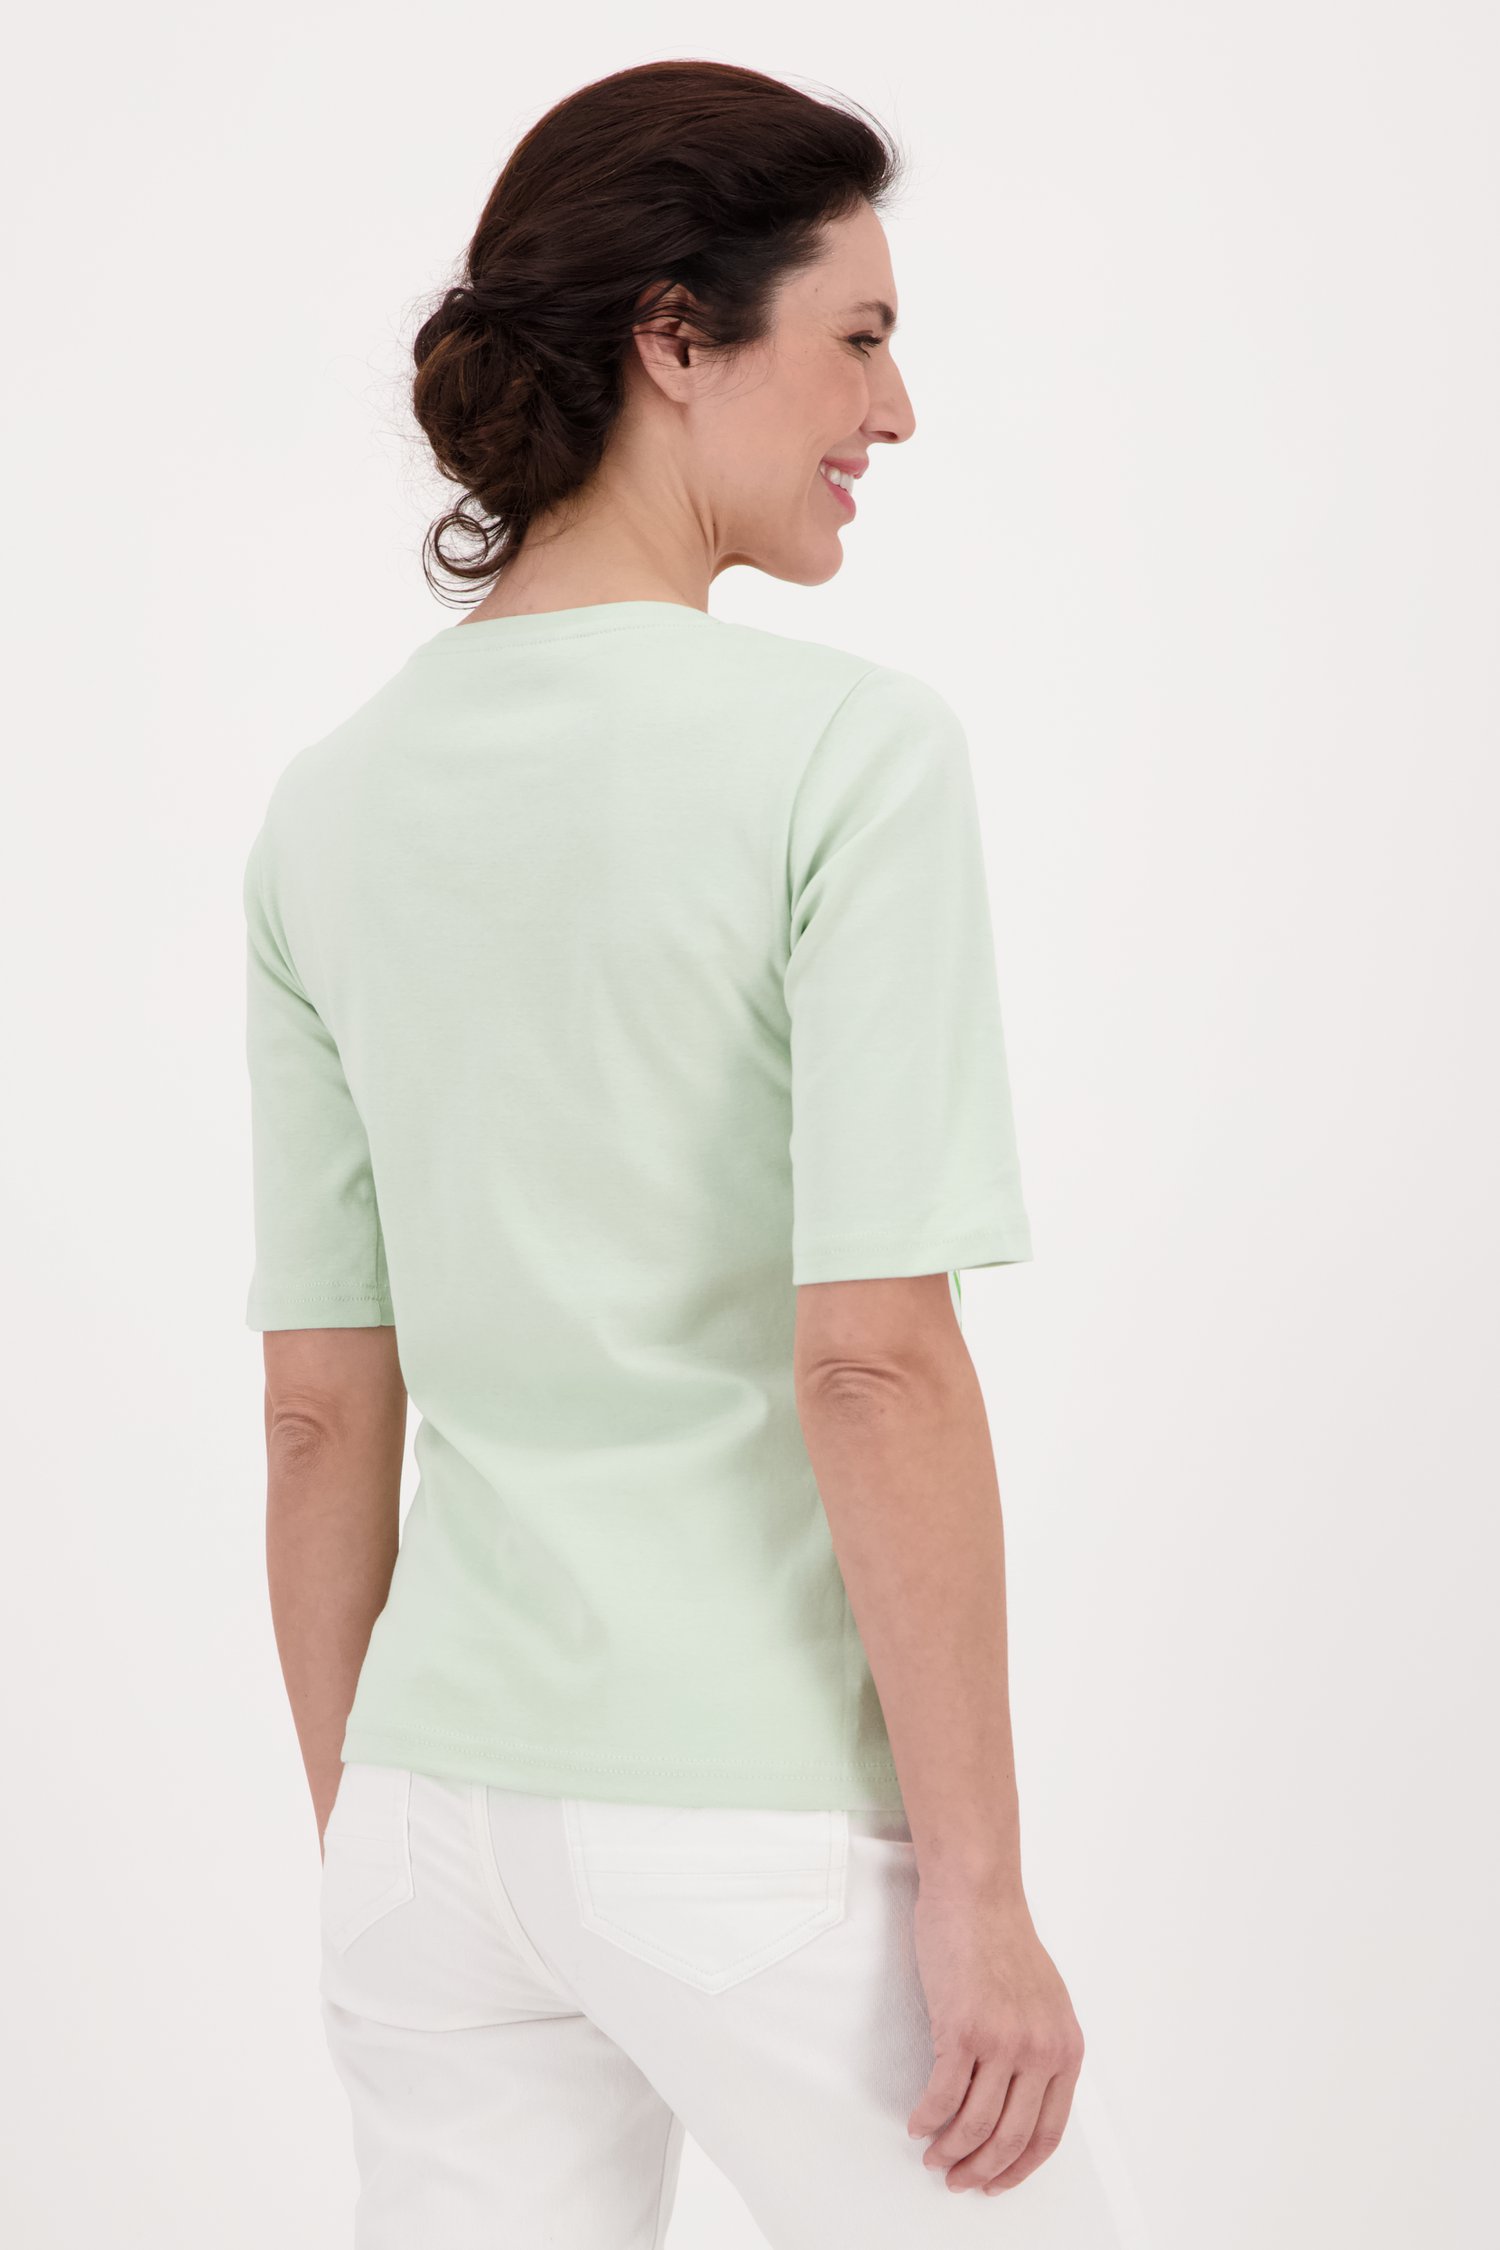 T-shirt vert pastel avec imprimé de Signature pour Femmes